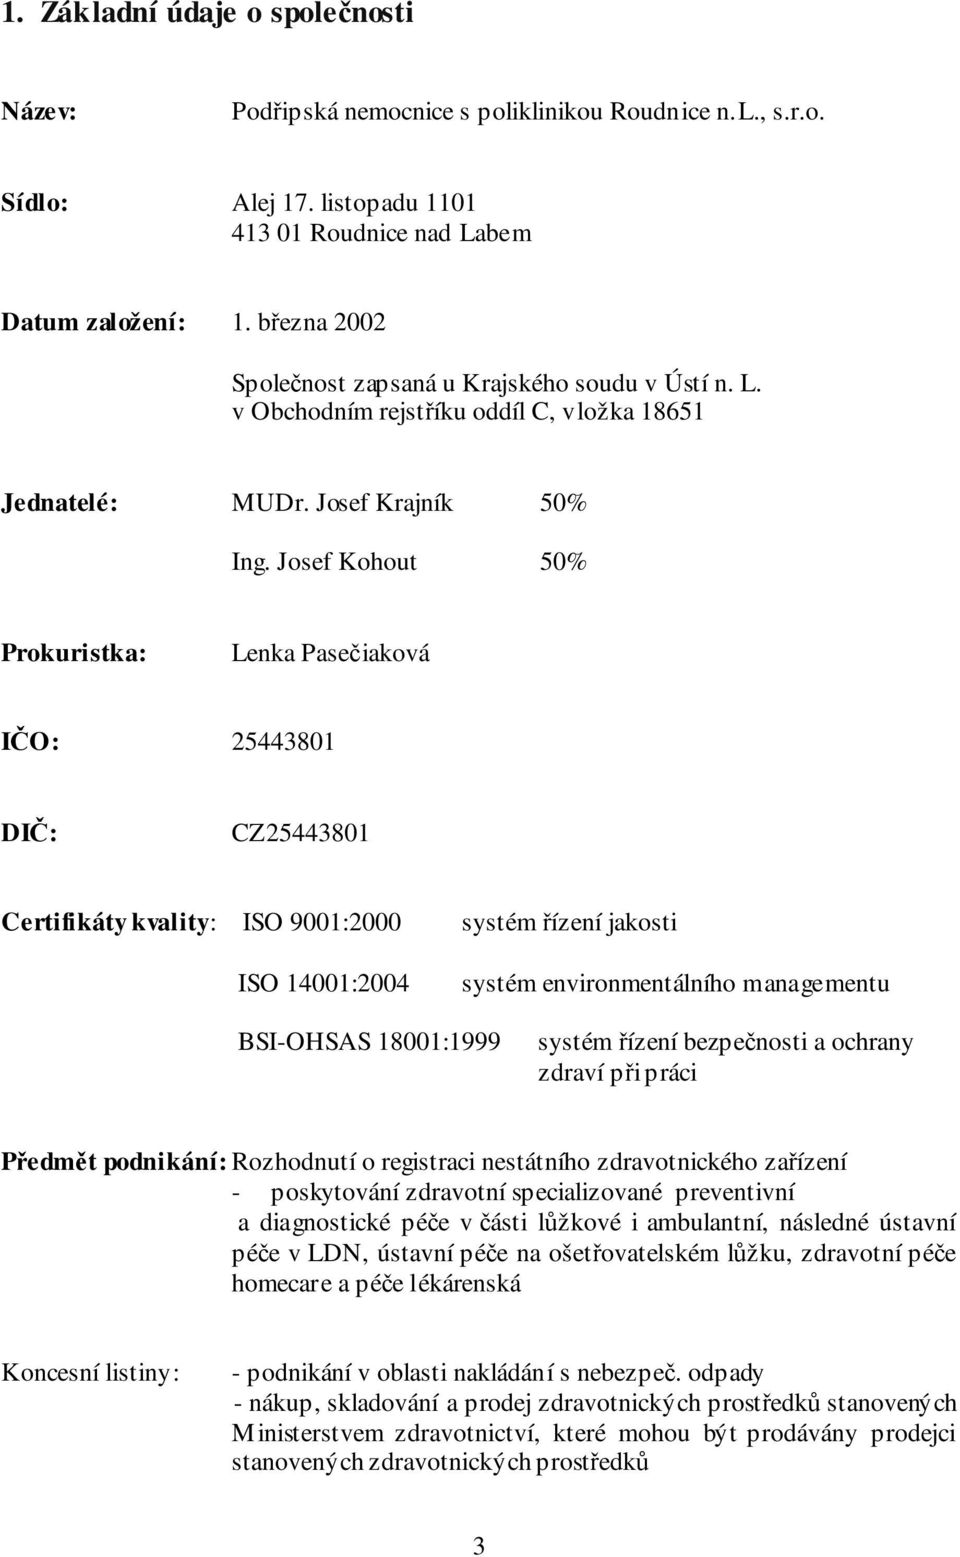 Josef Kohout 50% Prokuristka: Lenka Pasečiaková IČO: 25443801 DIČ: CZ25443801 Certifikáty kvality: ISO 9001:2000 systém řízení jakosti ISO 14001:2004 systém environmentálního managementu BSI-OHSAS